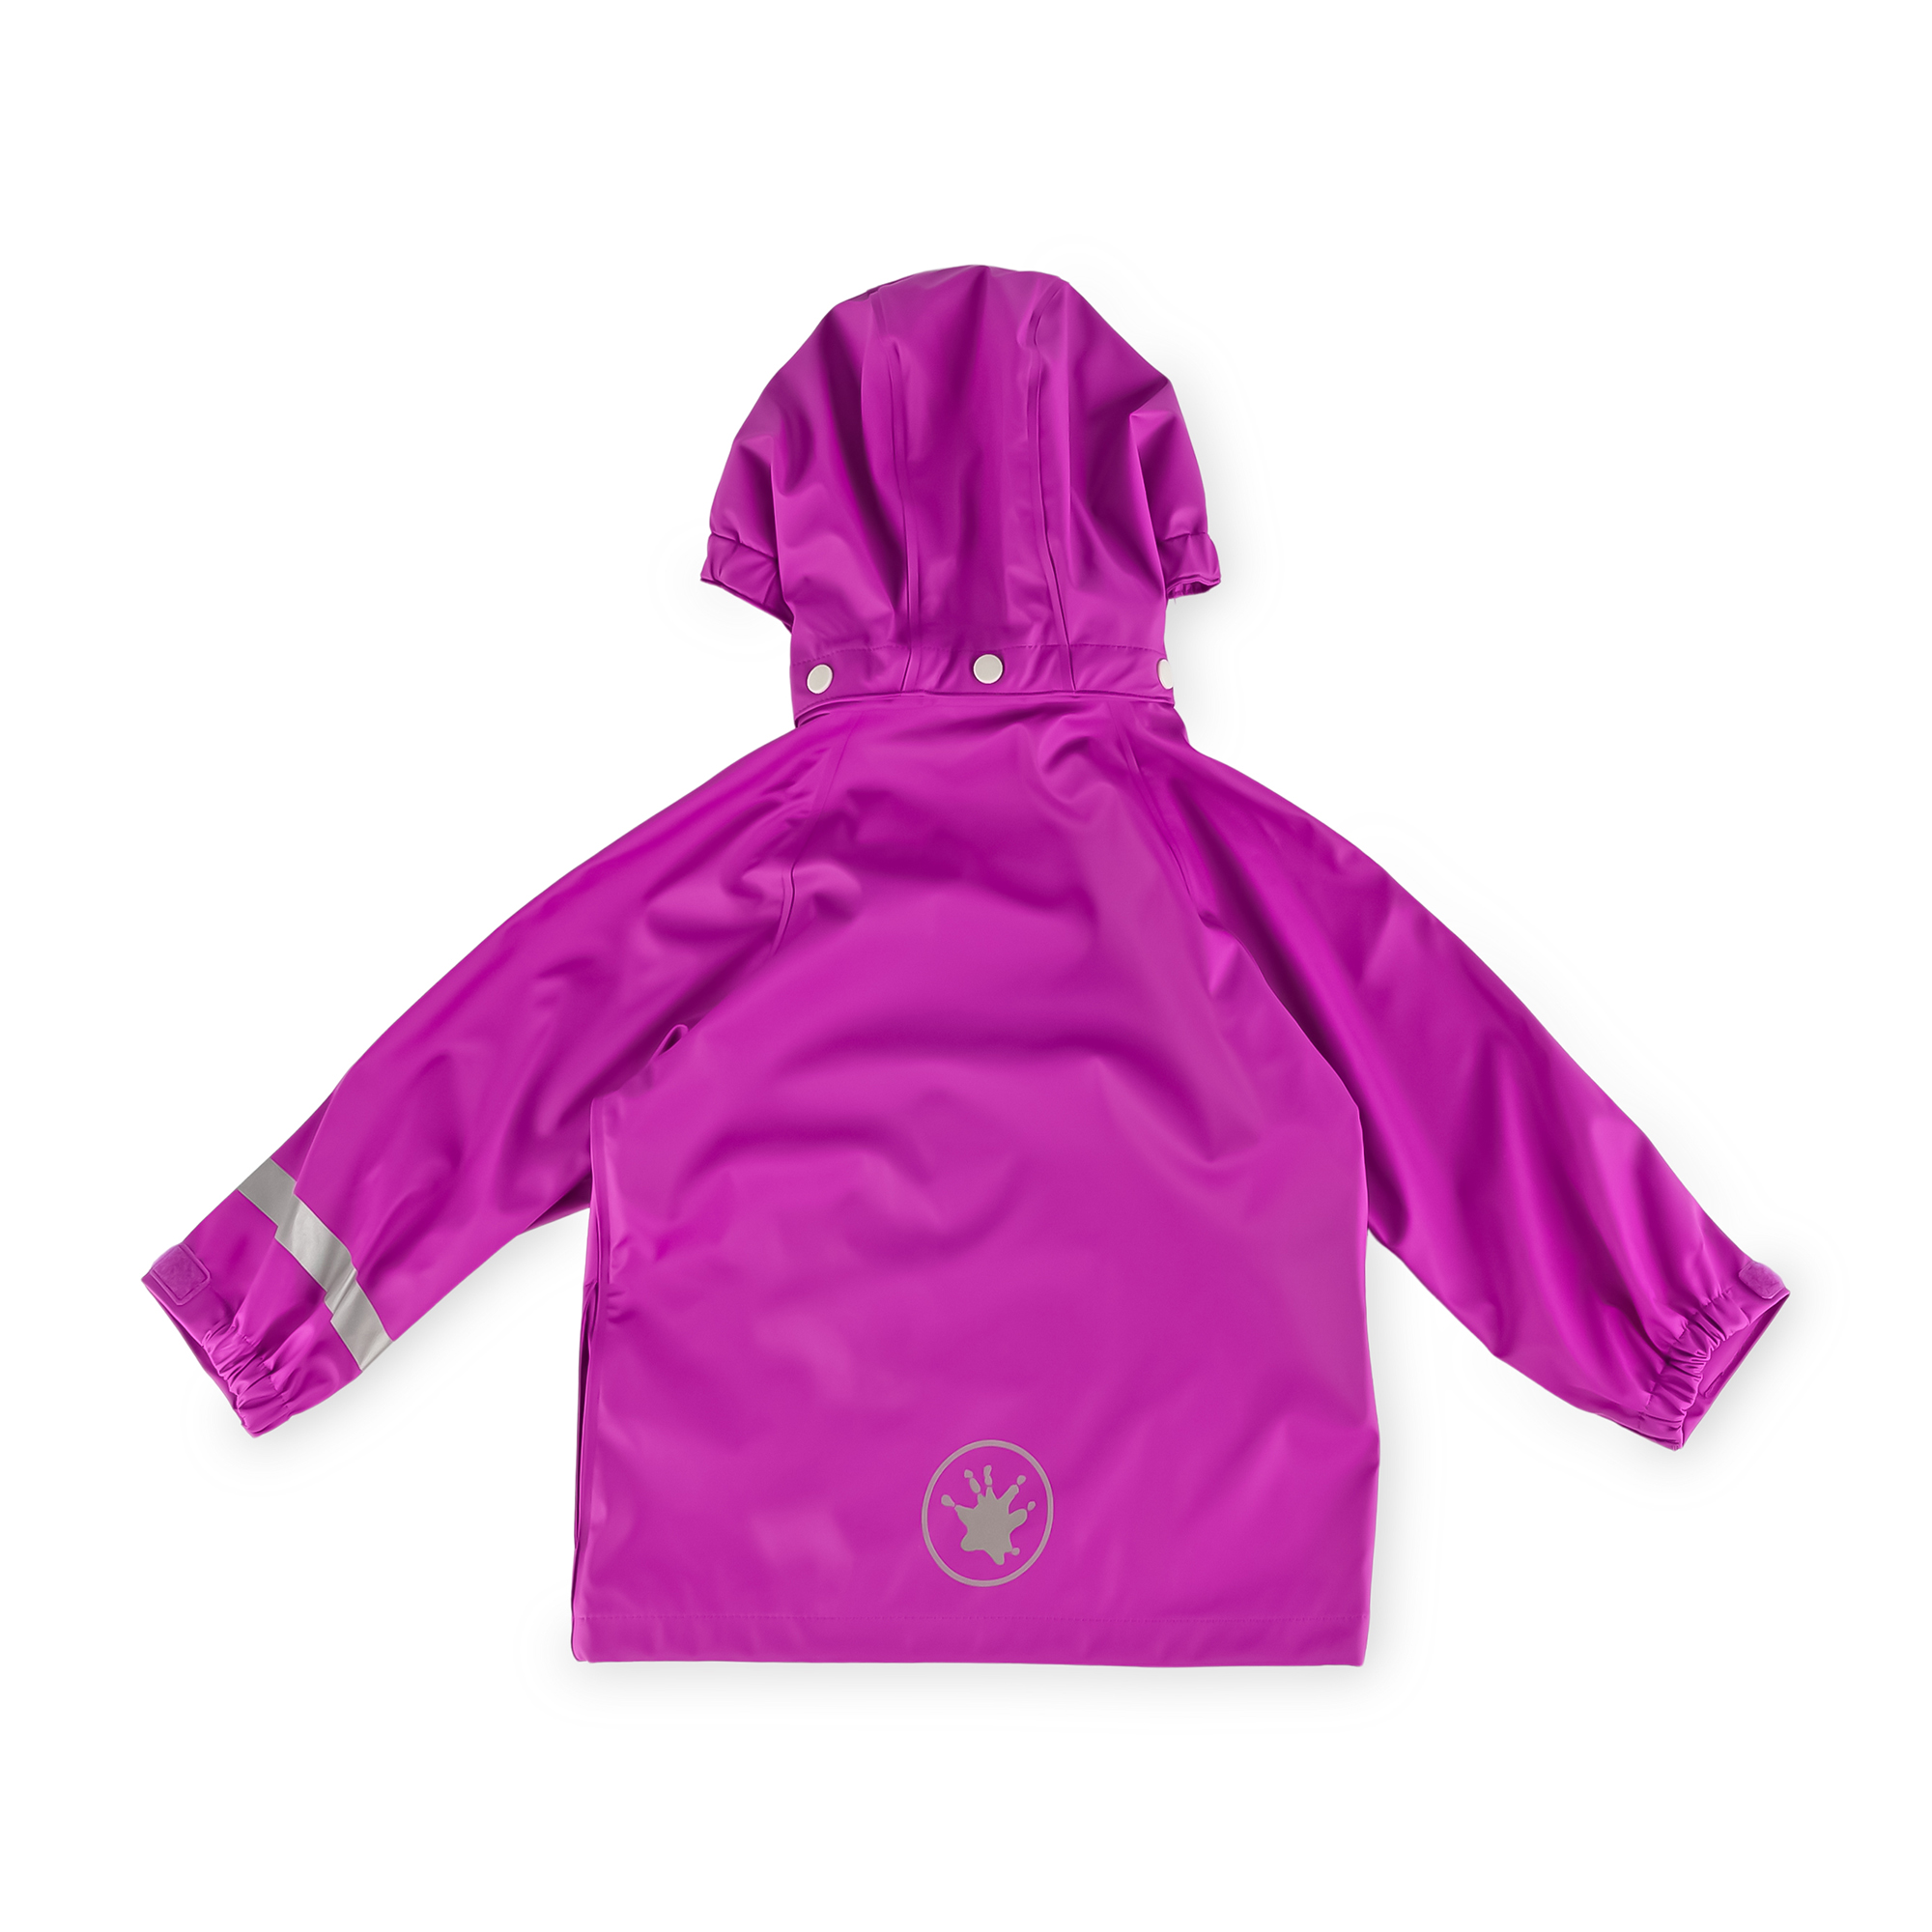 Kids' rain jacket, purple